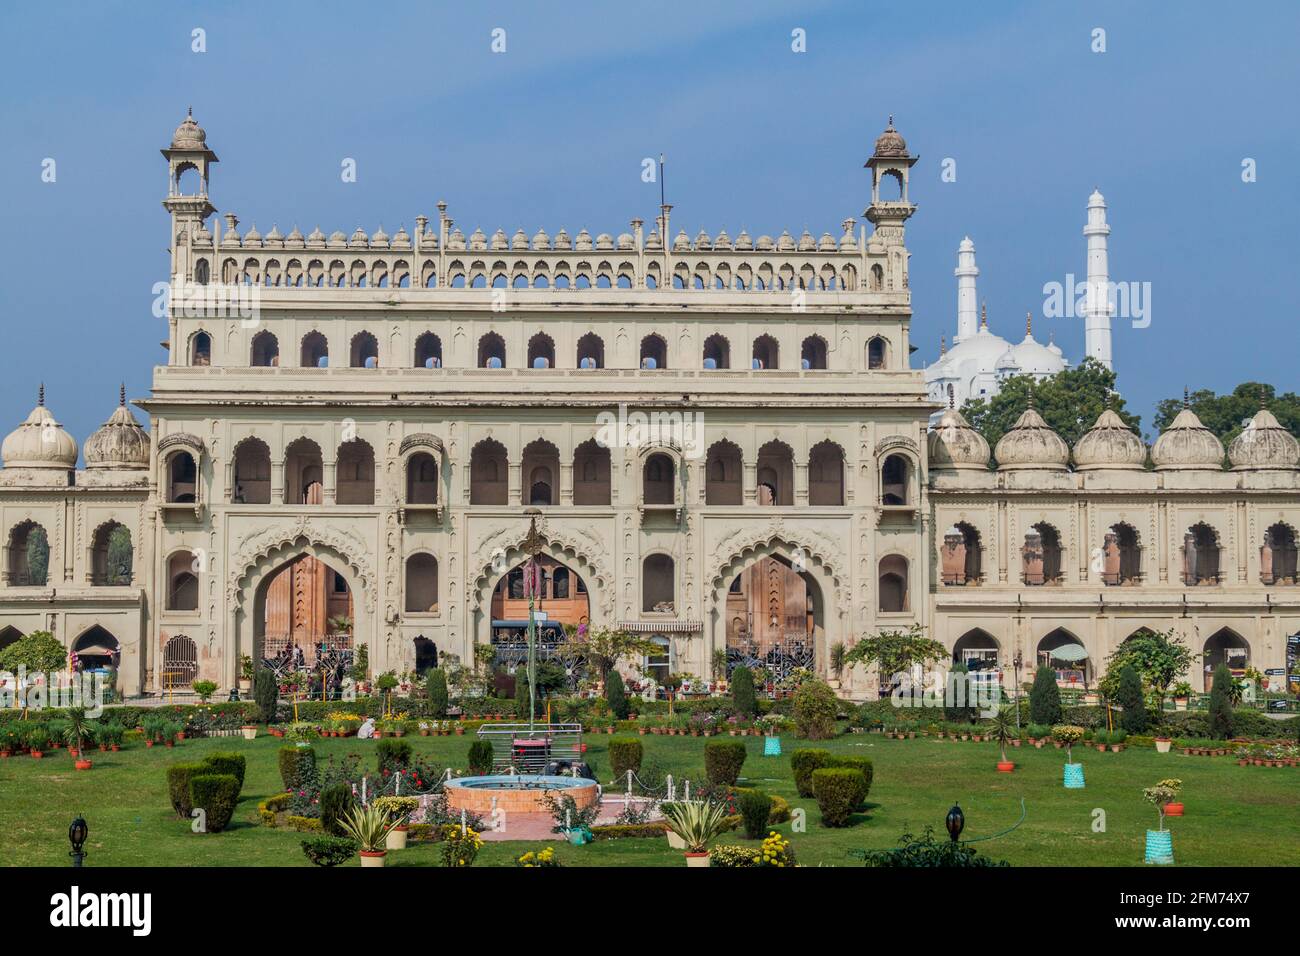 Porte d'entrée de Bara Imambara à Lucknow, État de l'Uttar Pradesh, Inde. Mosquée Teele Wali en arrière-plan. Banque D'Images